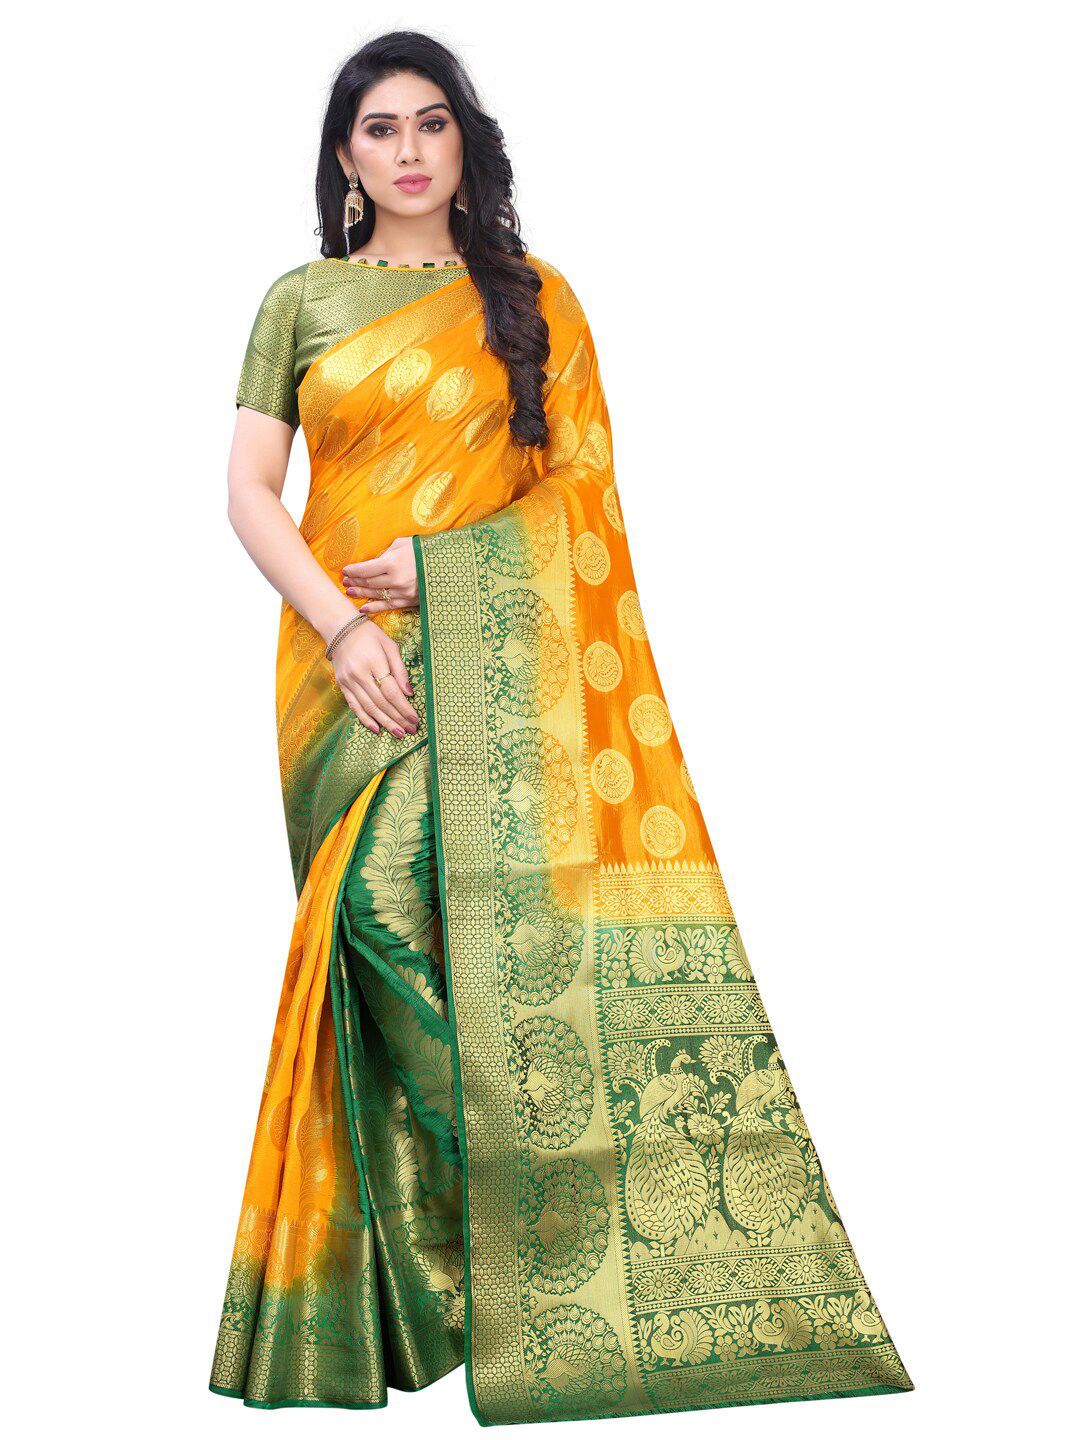 PERFECT WEAR Yellow & Green Floral Zari Silk Cotton Banarasi Saree Price in India